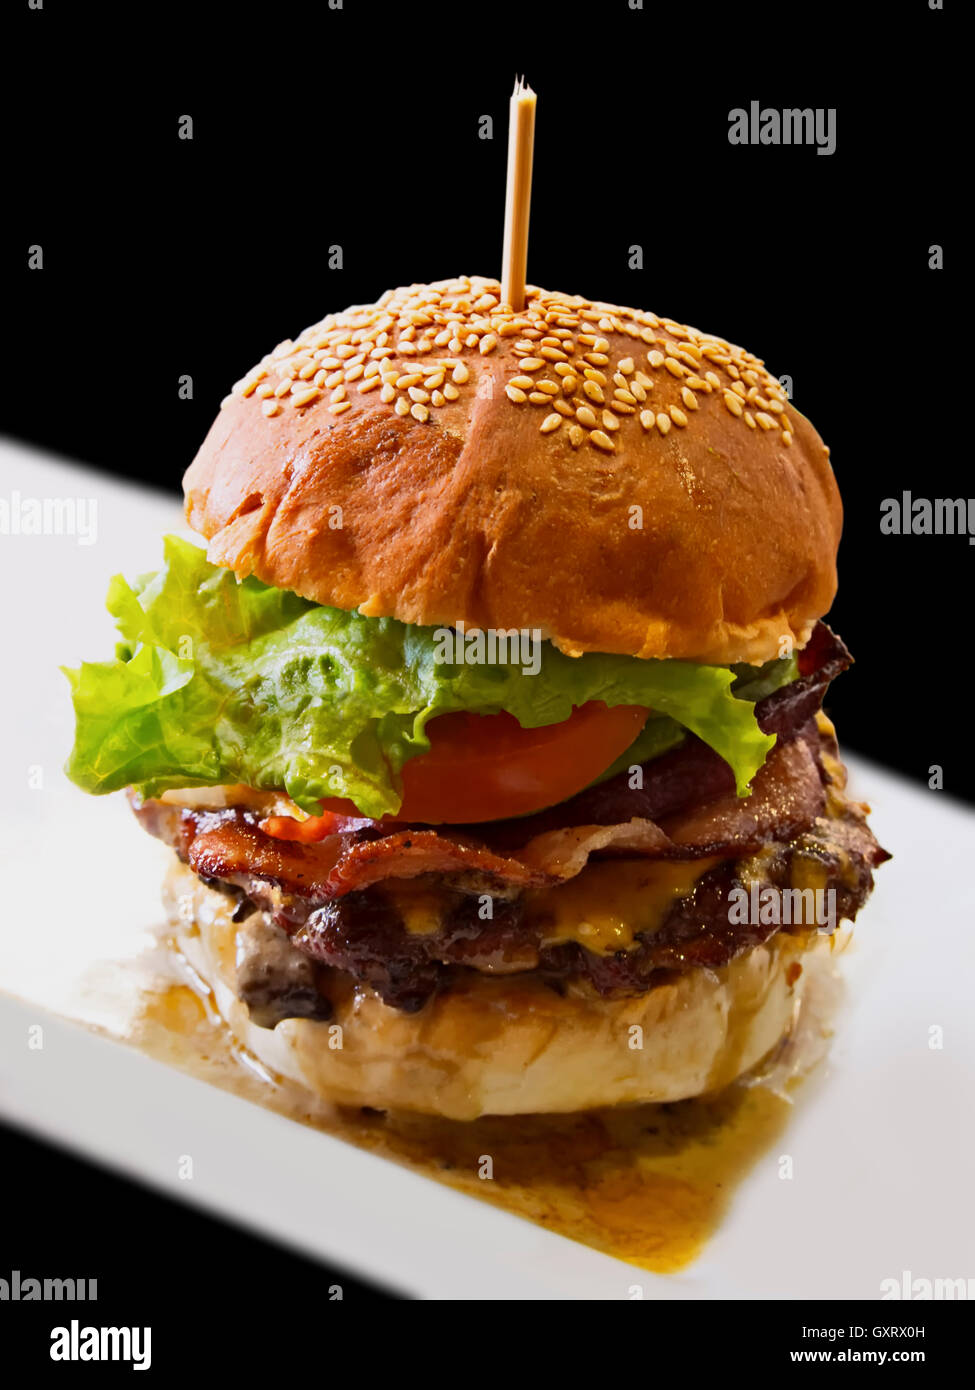 really juicy hamburger Stock Photo